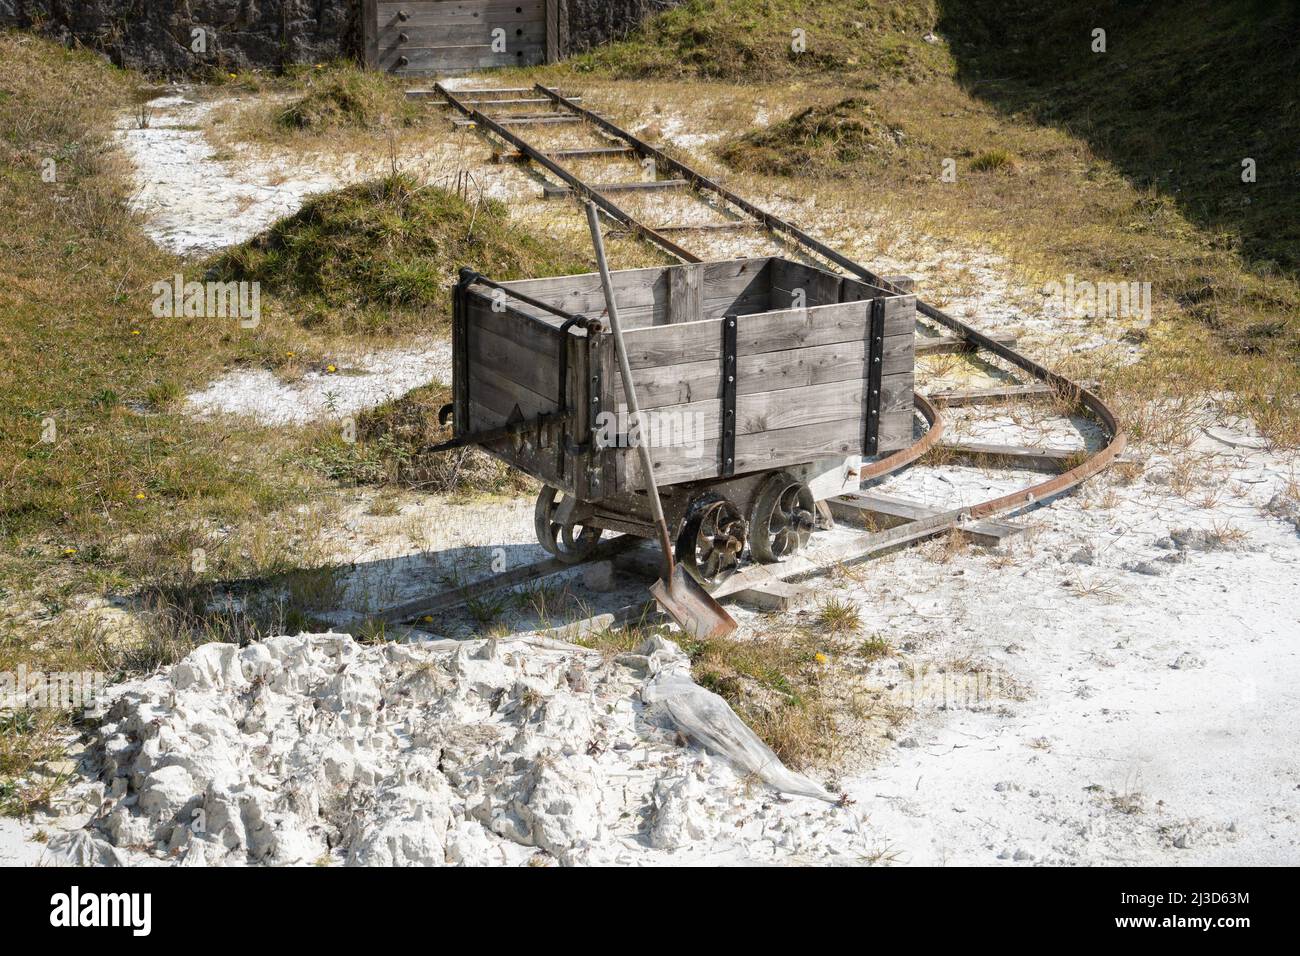 Estrazione storica di argilla cinese - carro vasca mineraria su binari ferroviari con pala. Wheal Martyn Clay Museum, St Austell, Cornovaglia, Regno Unito. Foto Stock